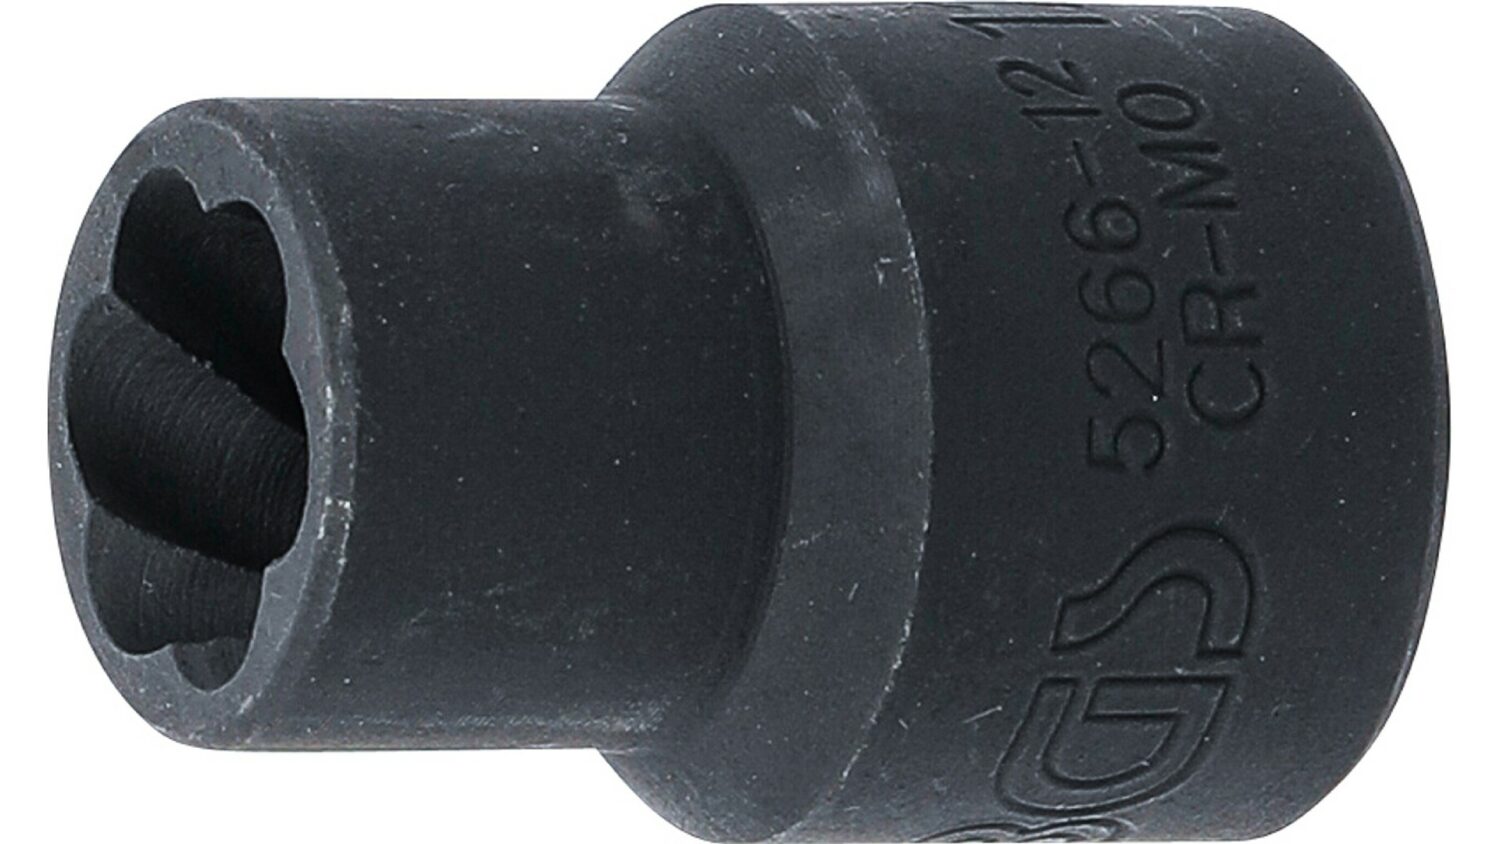 Bild vom BGS 5266-12 Spiral-Profil-Steckschlüssel-Einsatz / Schraubenausdreher | Antrieb Innenvierkant 12